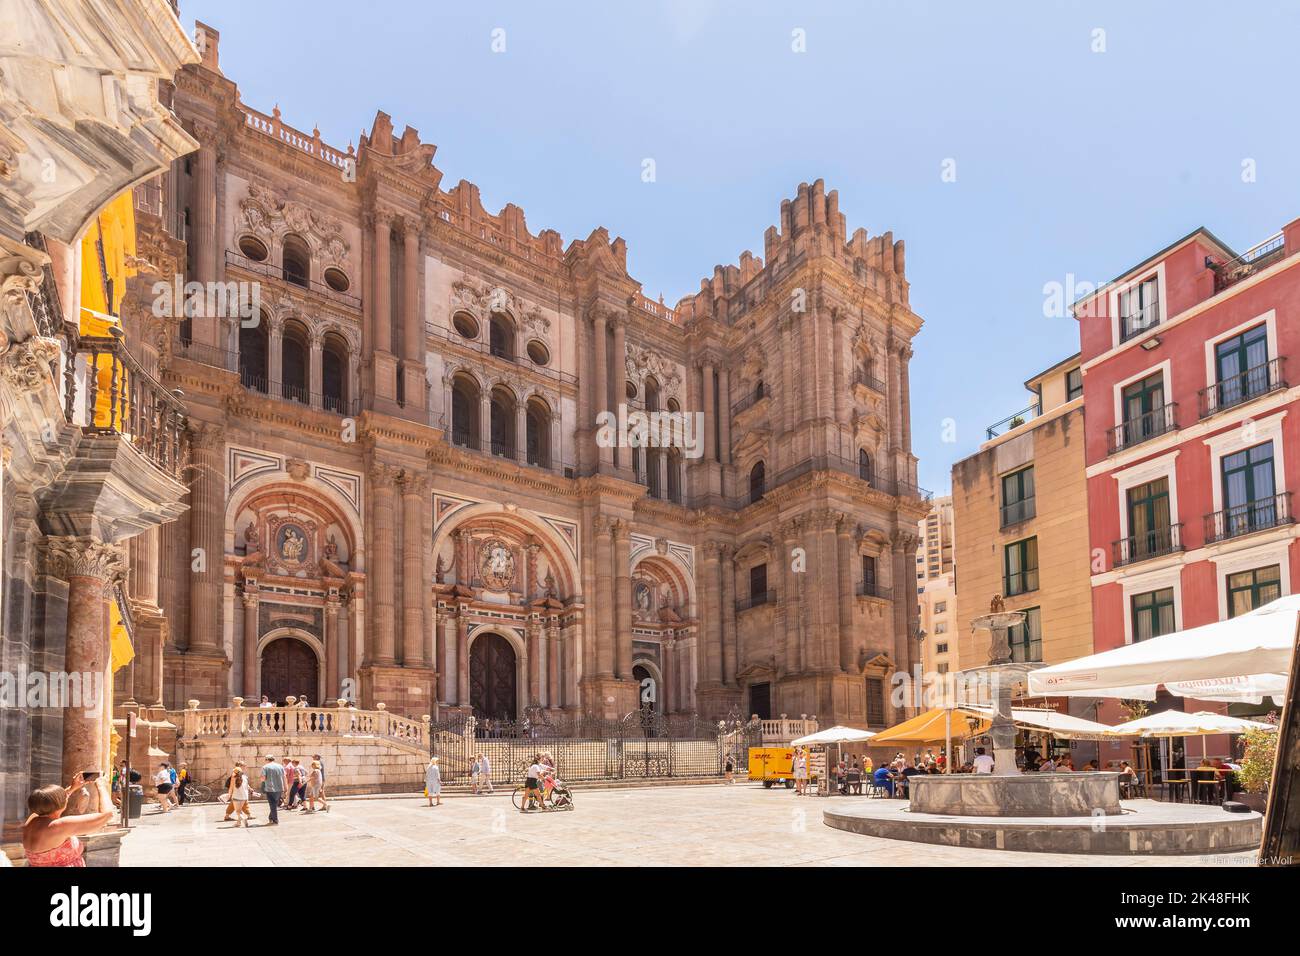 Vue sur la façade de la cathédrale de Malaga ou Santa Iglesia Catedral Basílica de la Encarnación, avec une fontaine et des touristes sur la place de la ville Banque D'Images